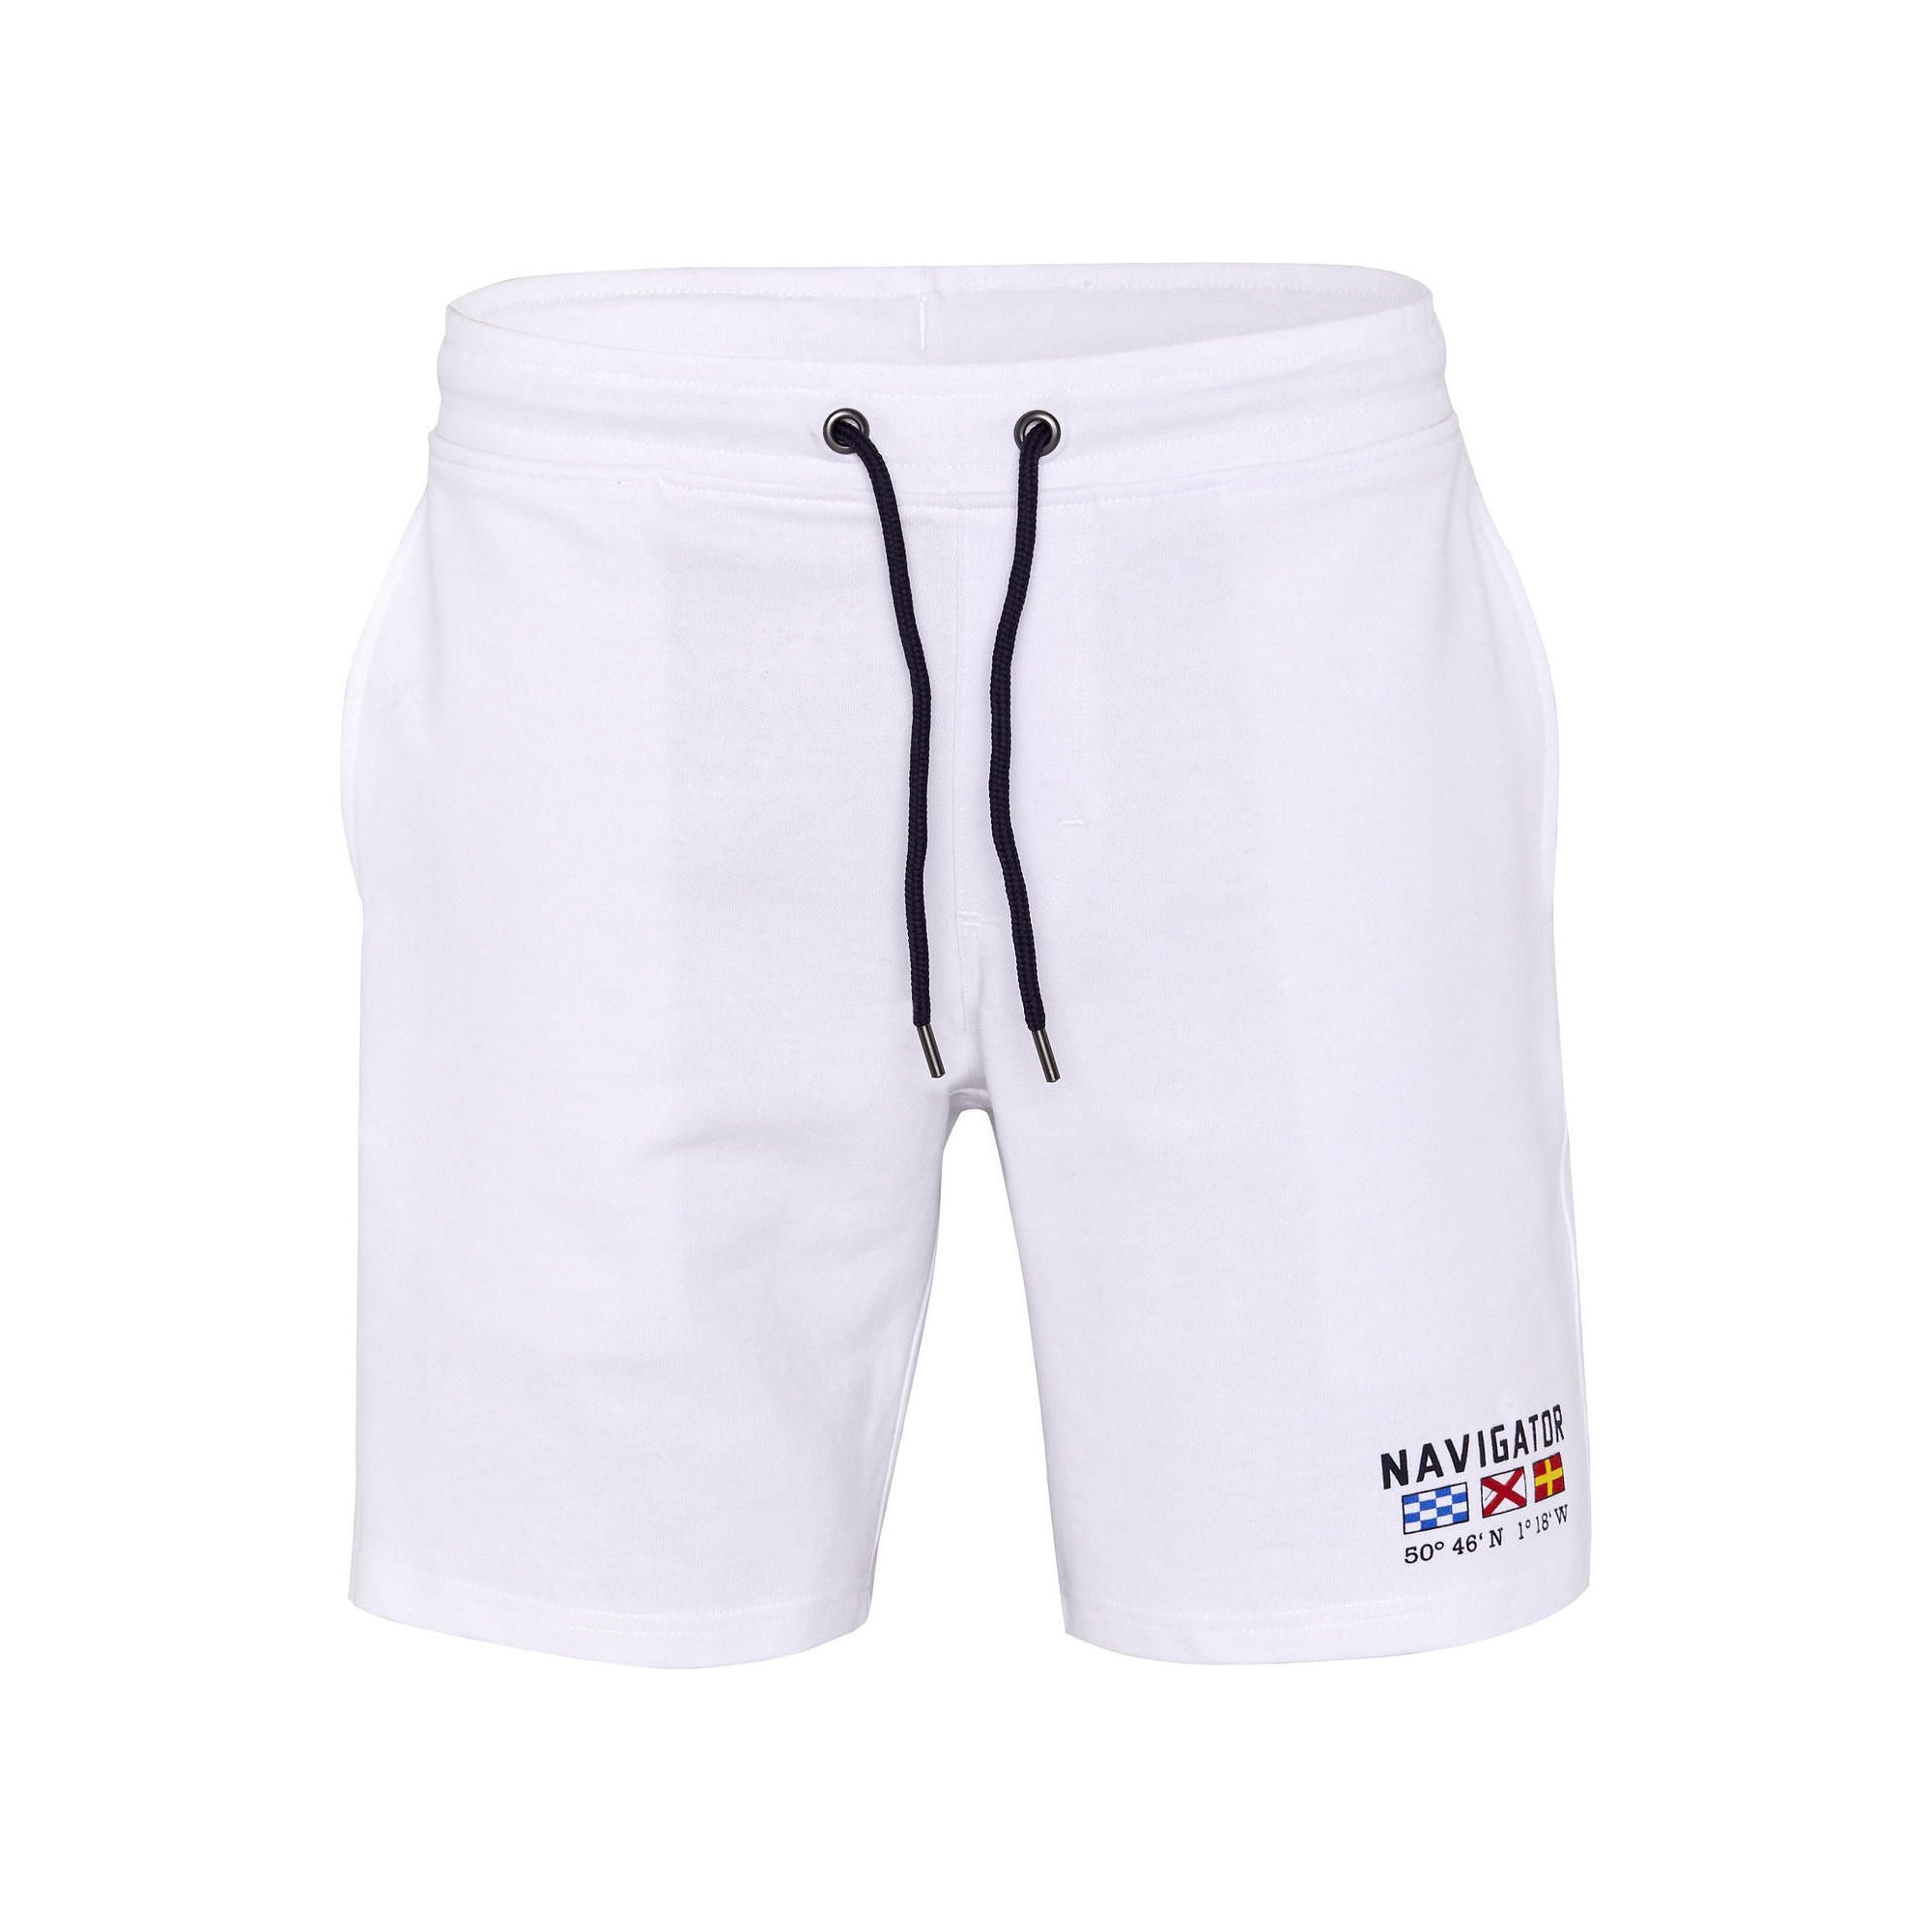 Войти главная навигатор shorts. Tommy Hilfiger шорты для плавания белые. Шорты Spyder мужские. Airwalk шорты. Шорты баскетбольные мужские белые.